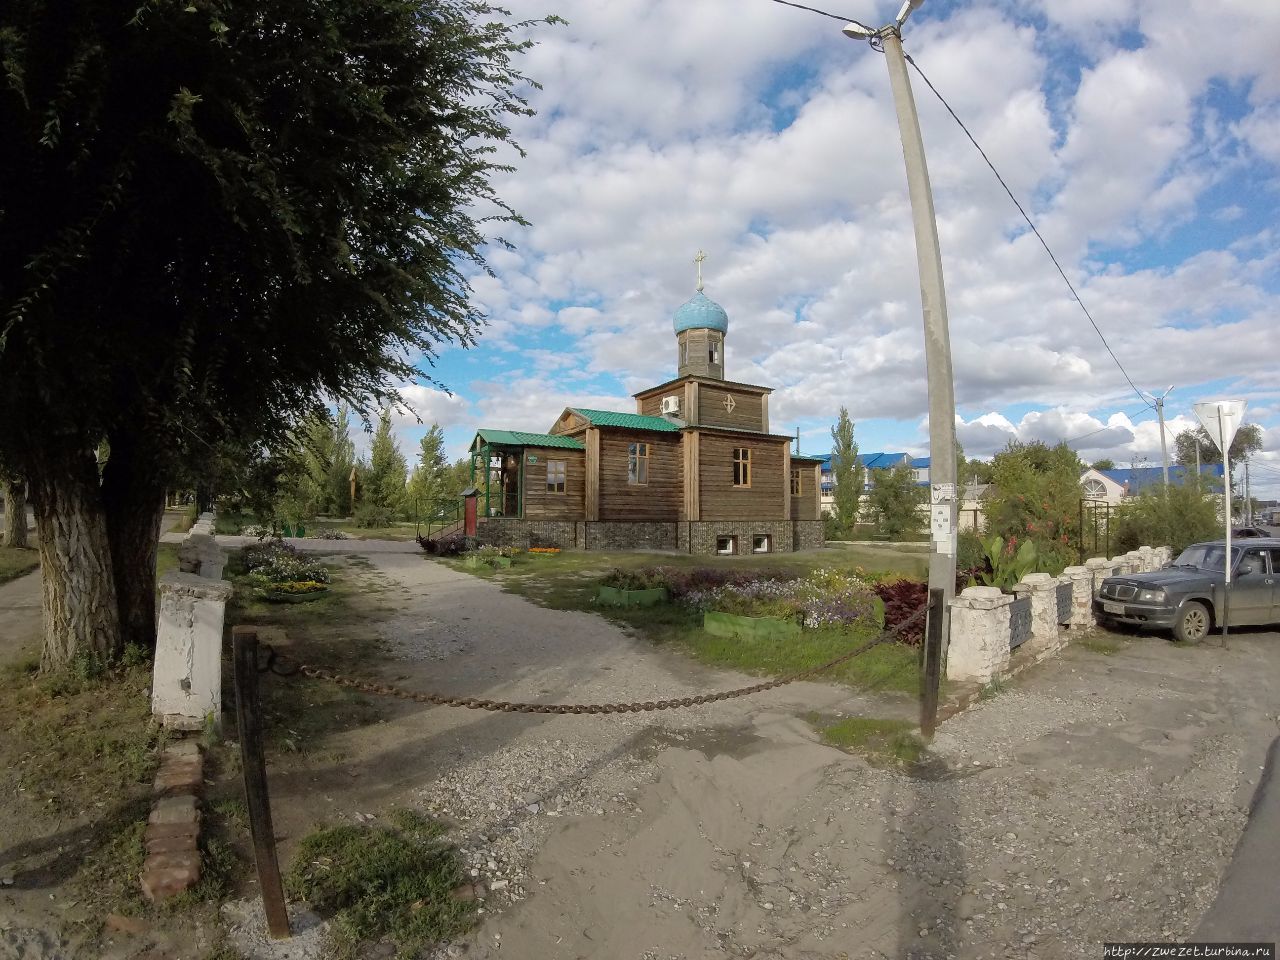 Соль-Илецк, церковь возле тюрьмы Черный дельфин Аральск, Казахстан